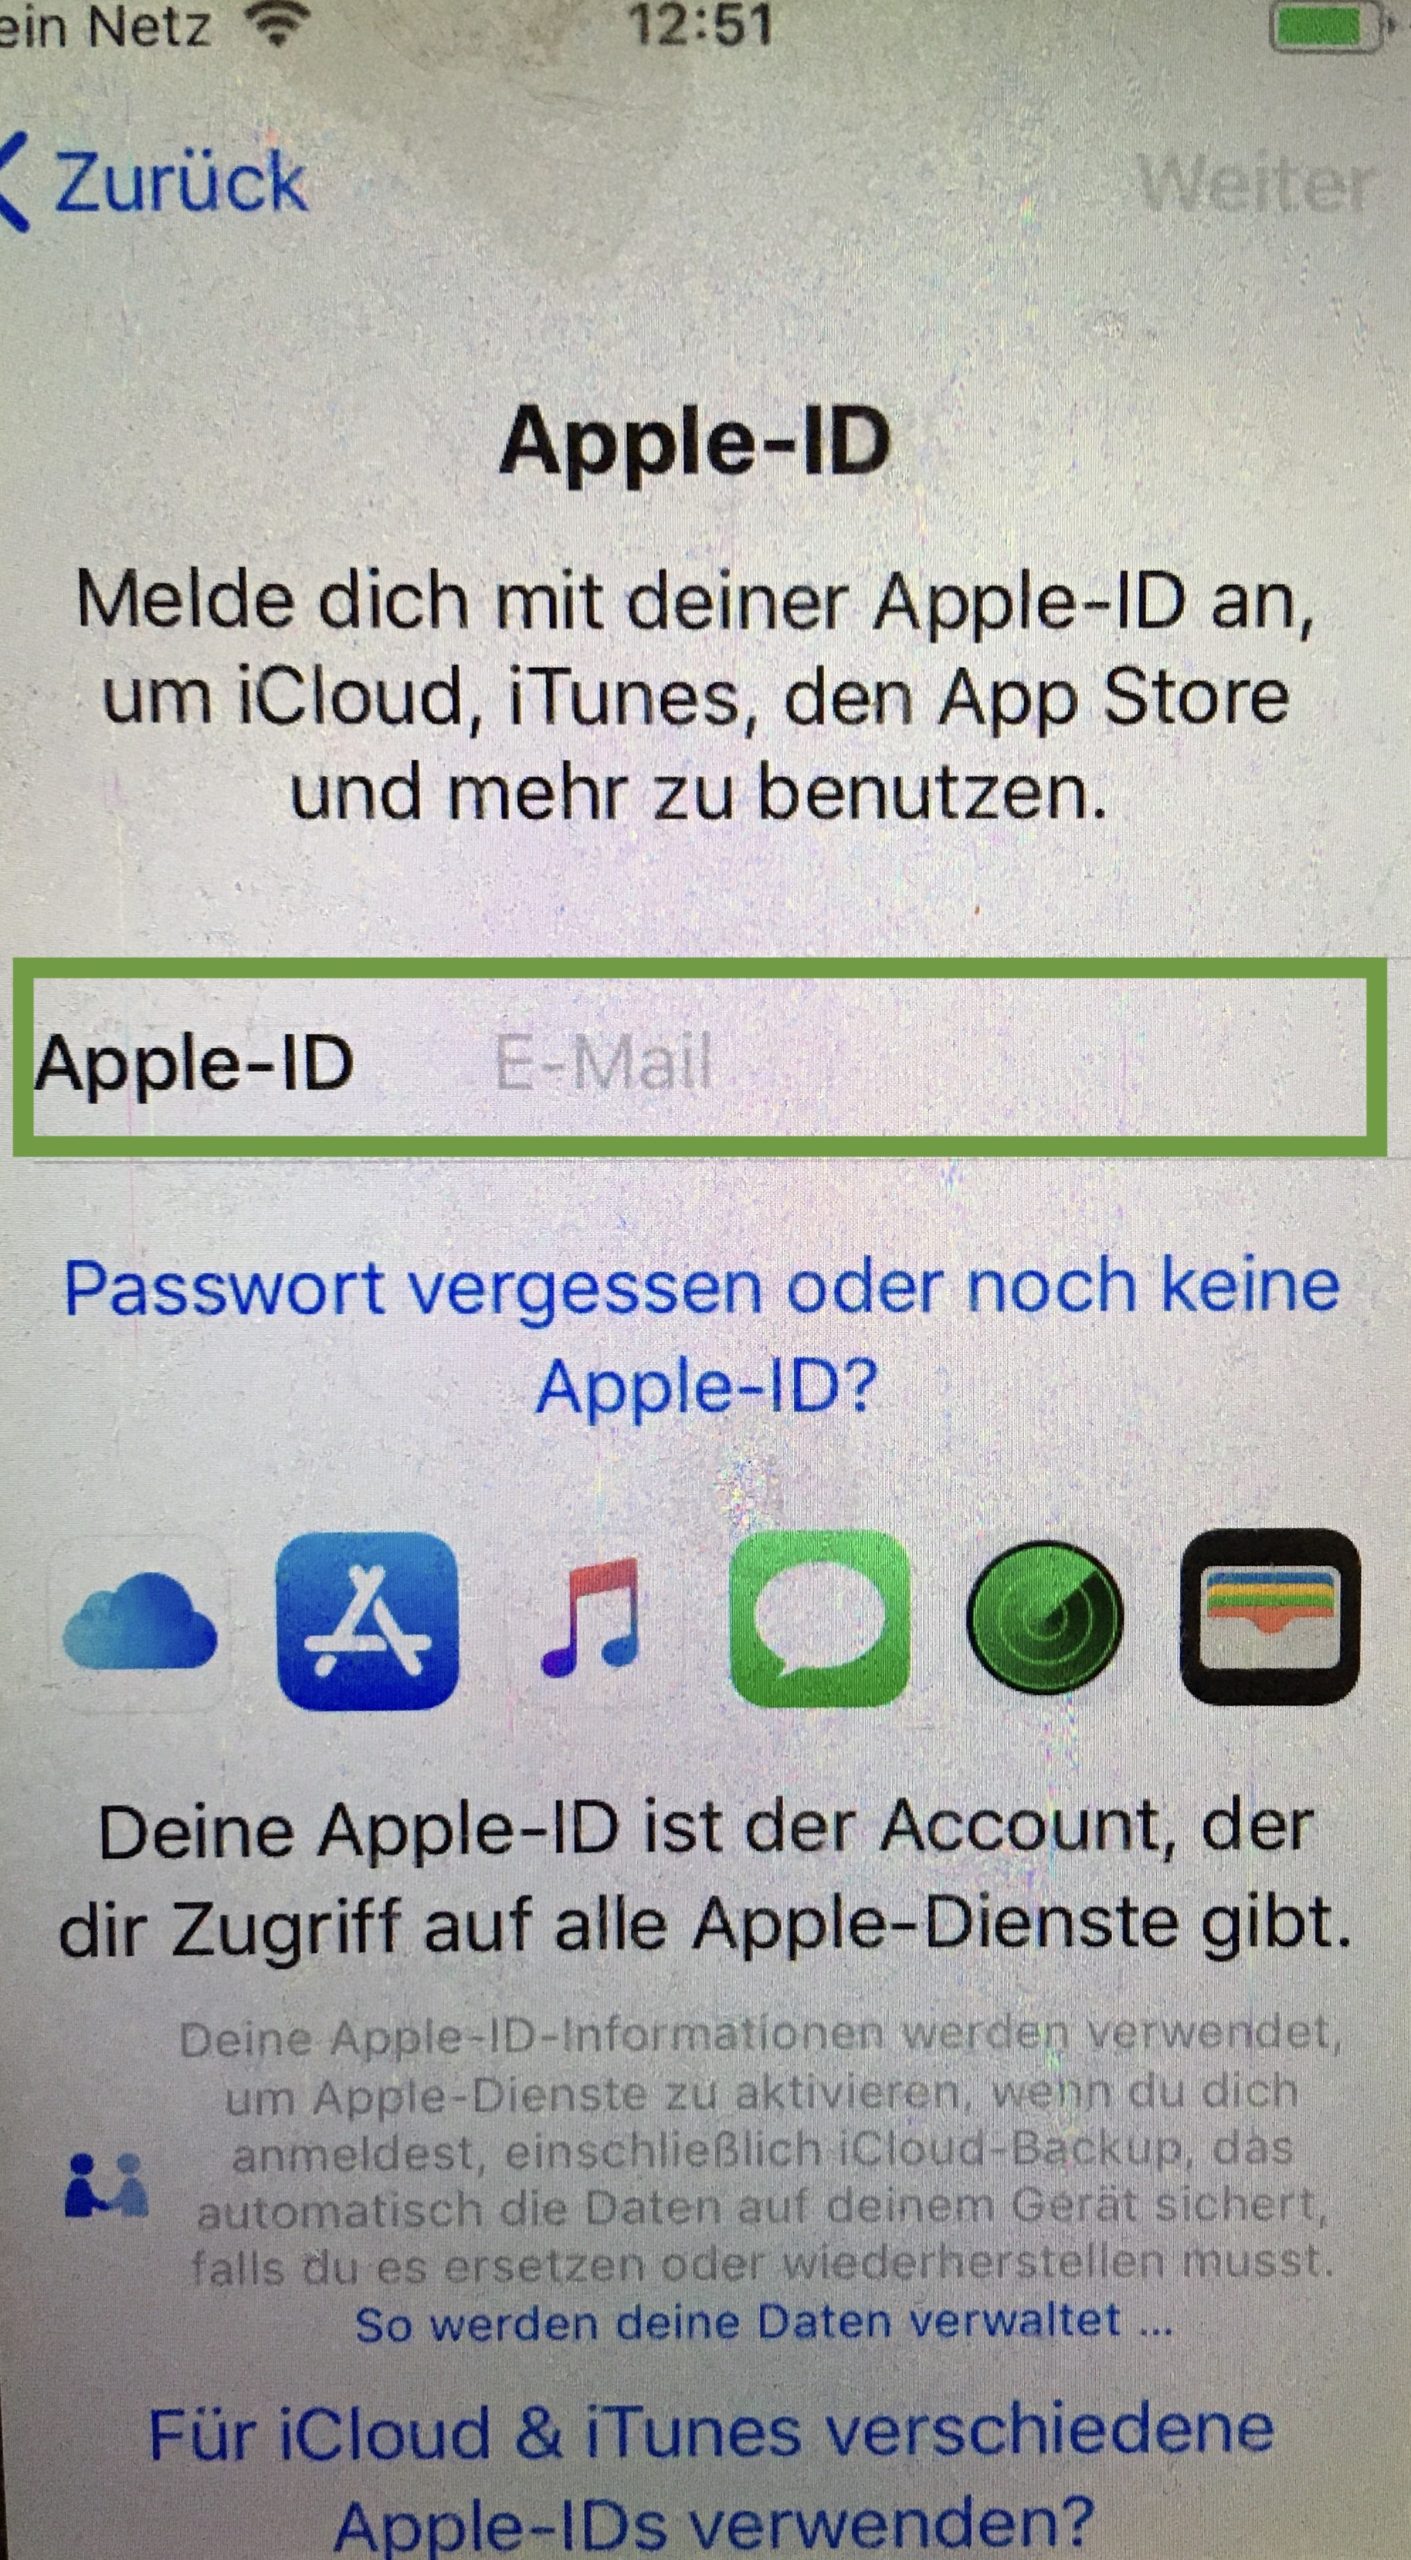 Bild zum Schritt 11 für die Kinder-Beschäftigung: 'Als nächstes gibst du die Apple-ID deines Kindes ein oder...'